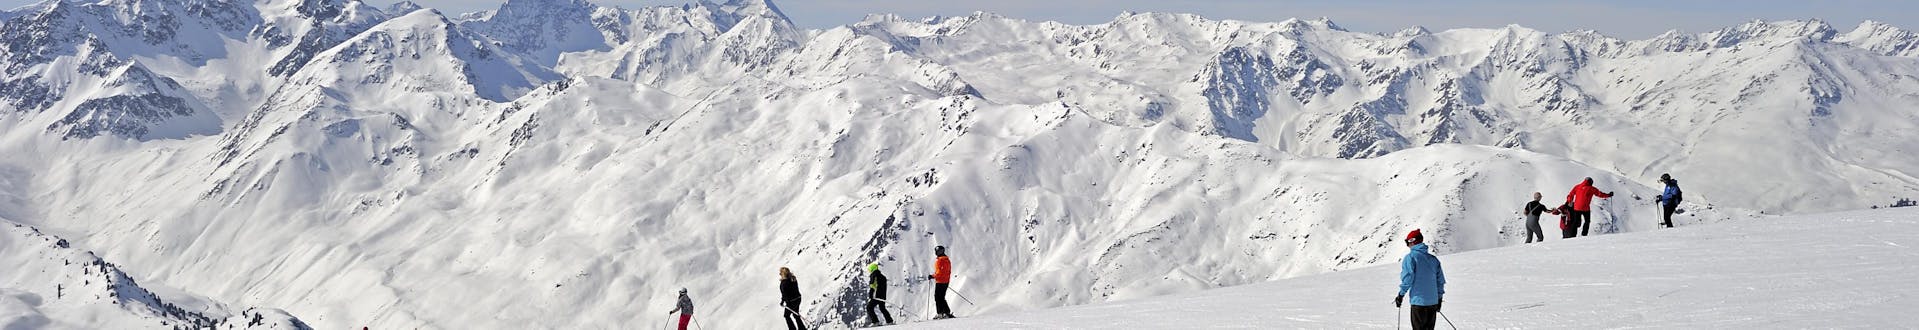 Adultes et enfants skiant dans la station de ski de Axamer Lizum.